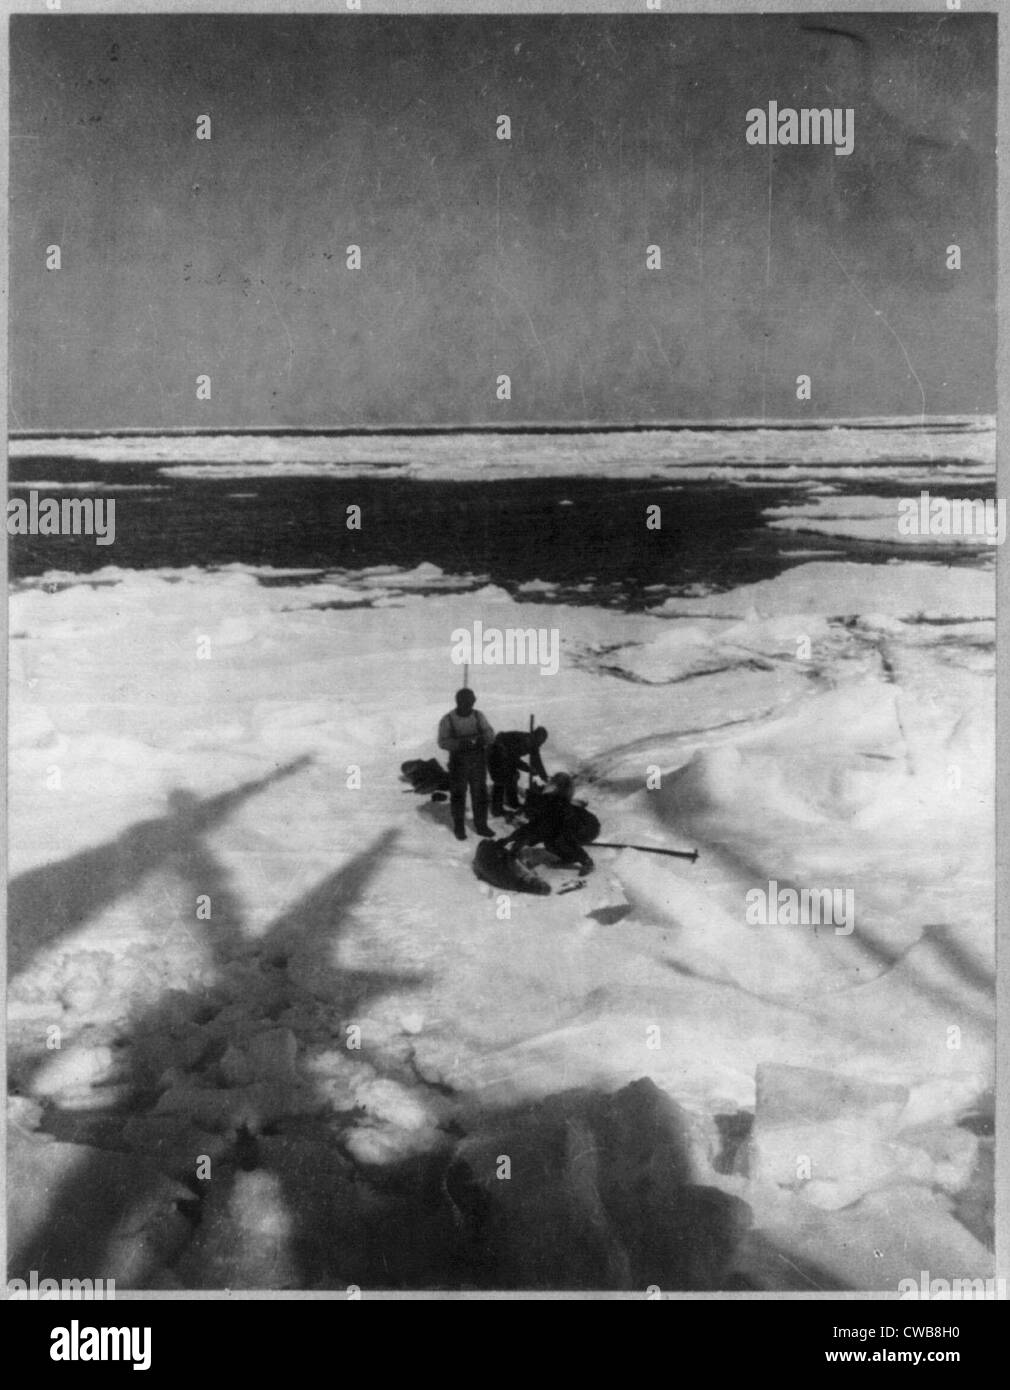 Entdeckung und Erforschung des Südpols durch Roald Amundsen Kapitän und Crew. Angezeigt: Mitglieder der Expedition Erfassung Dichtungen, Stockfoto